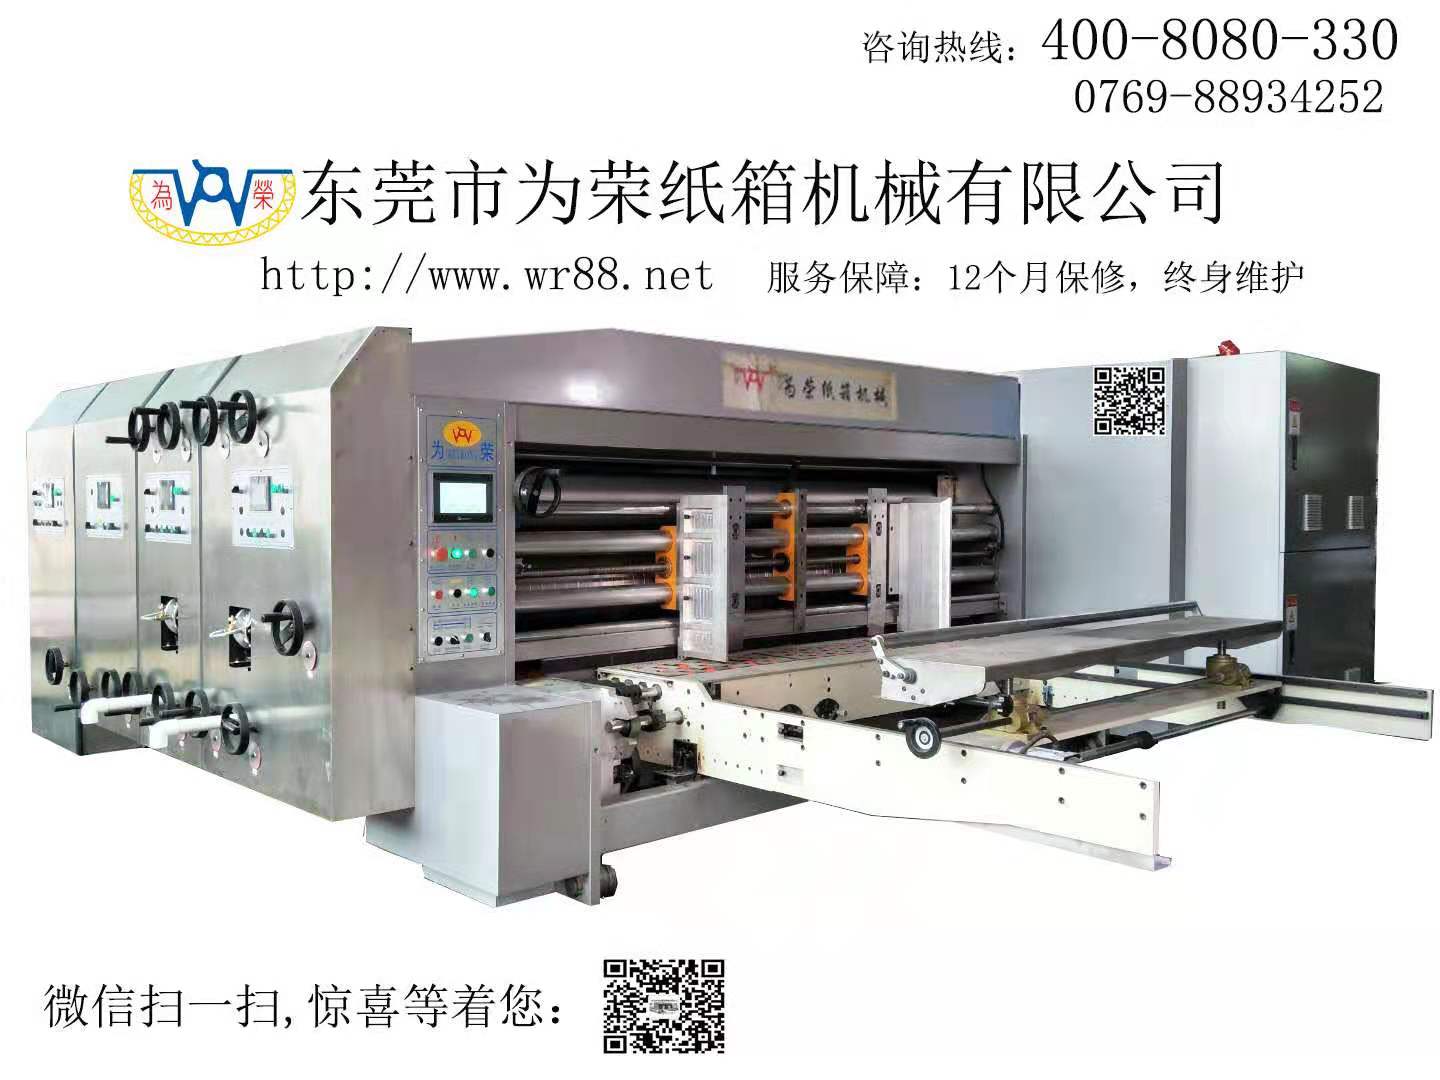 G1C-1424自动送纸双色印刷开槽模切机操作视频